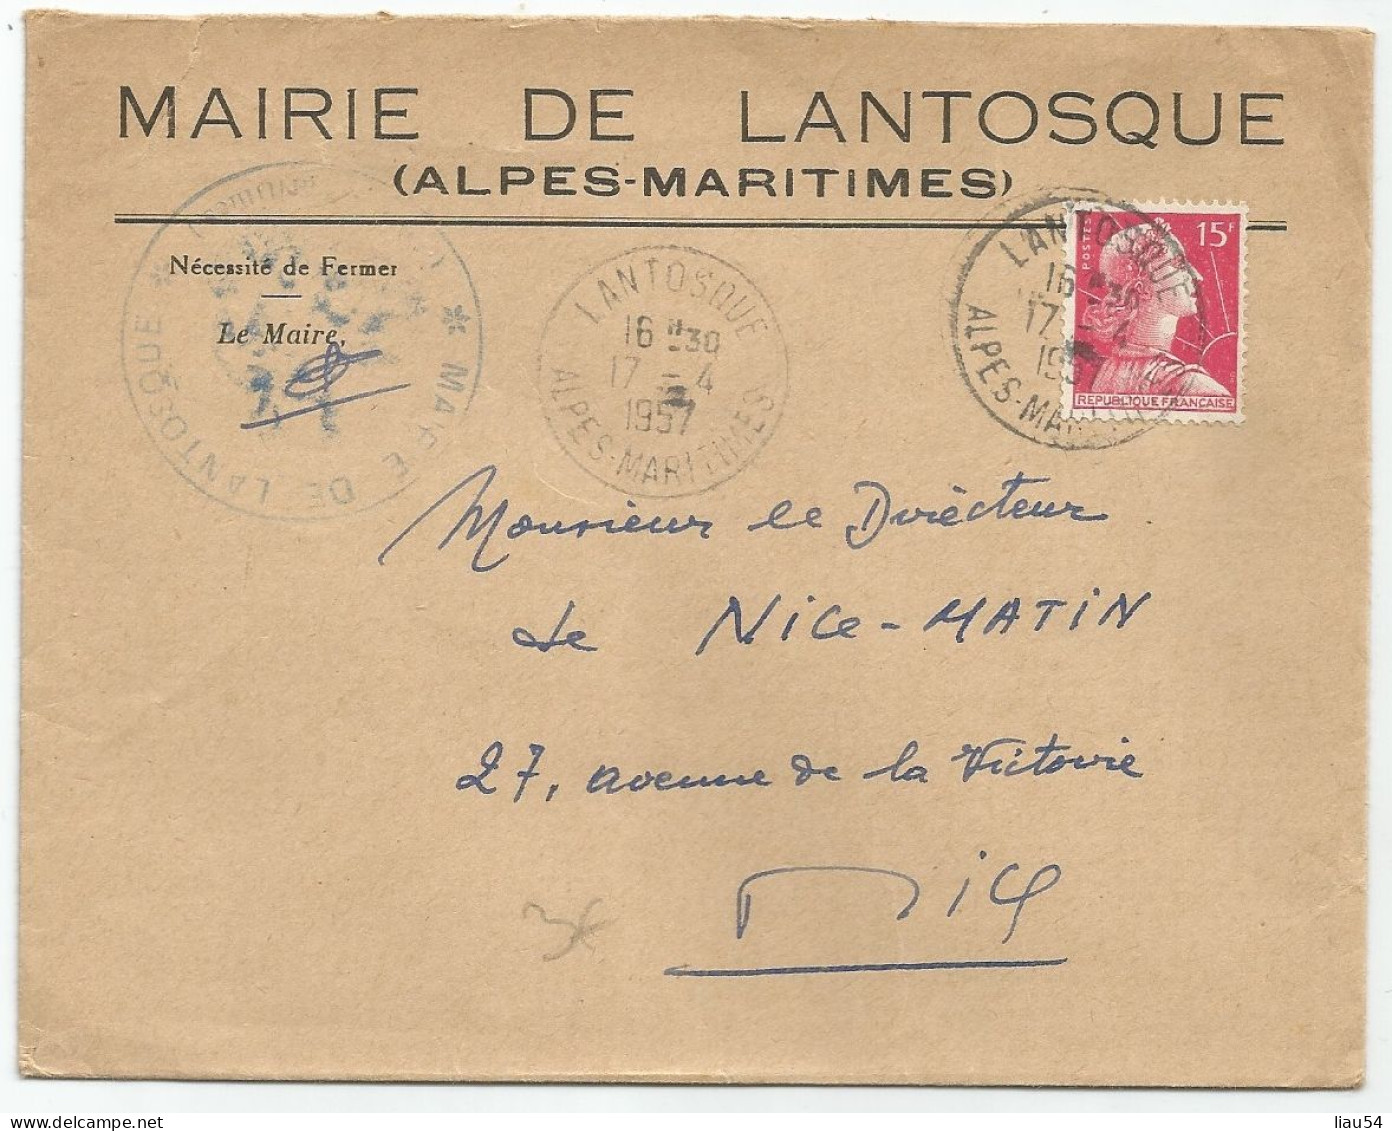 MAIRIE DE LANTOSQUE (1957) - Lantosque